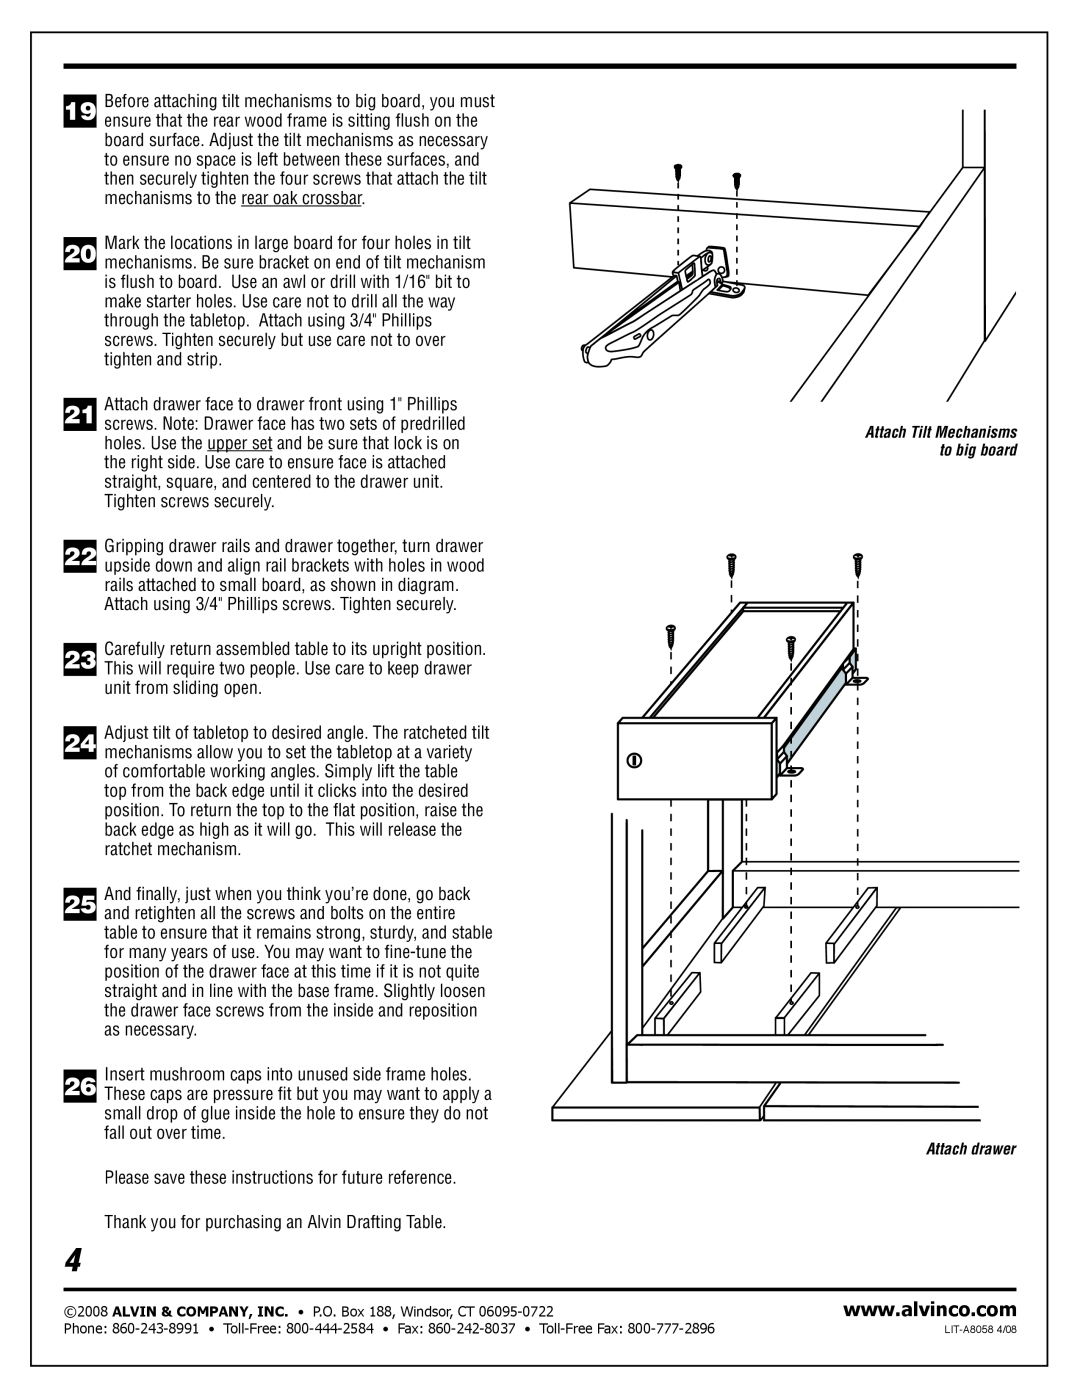 Alvin Titan II manual 